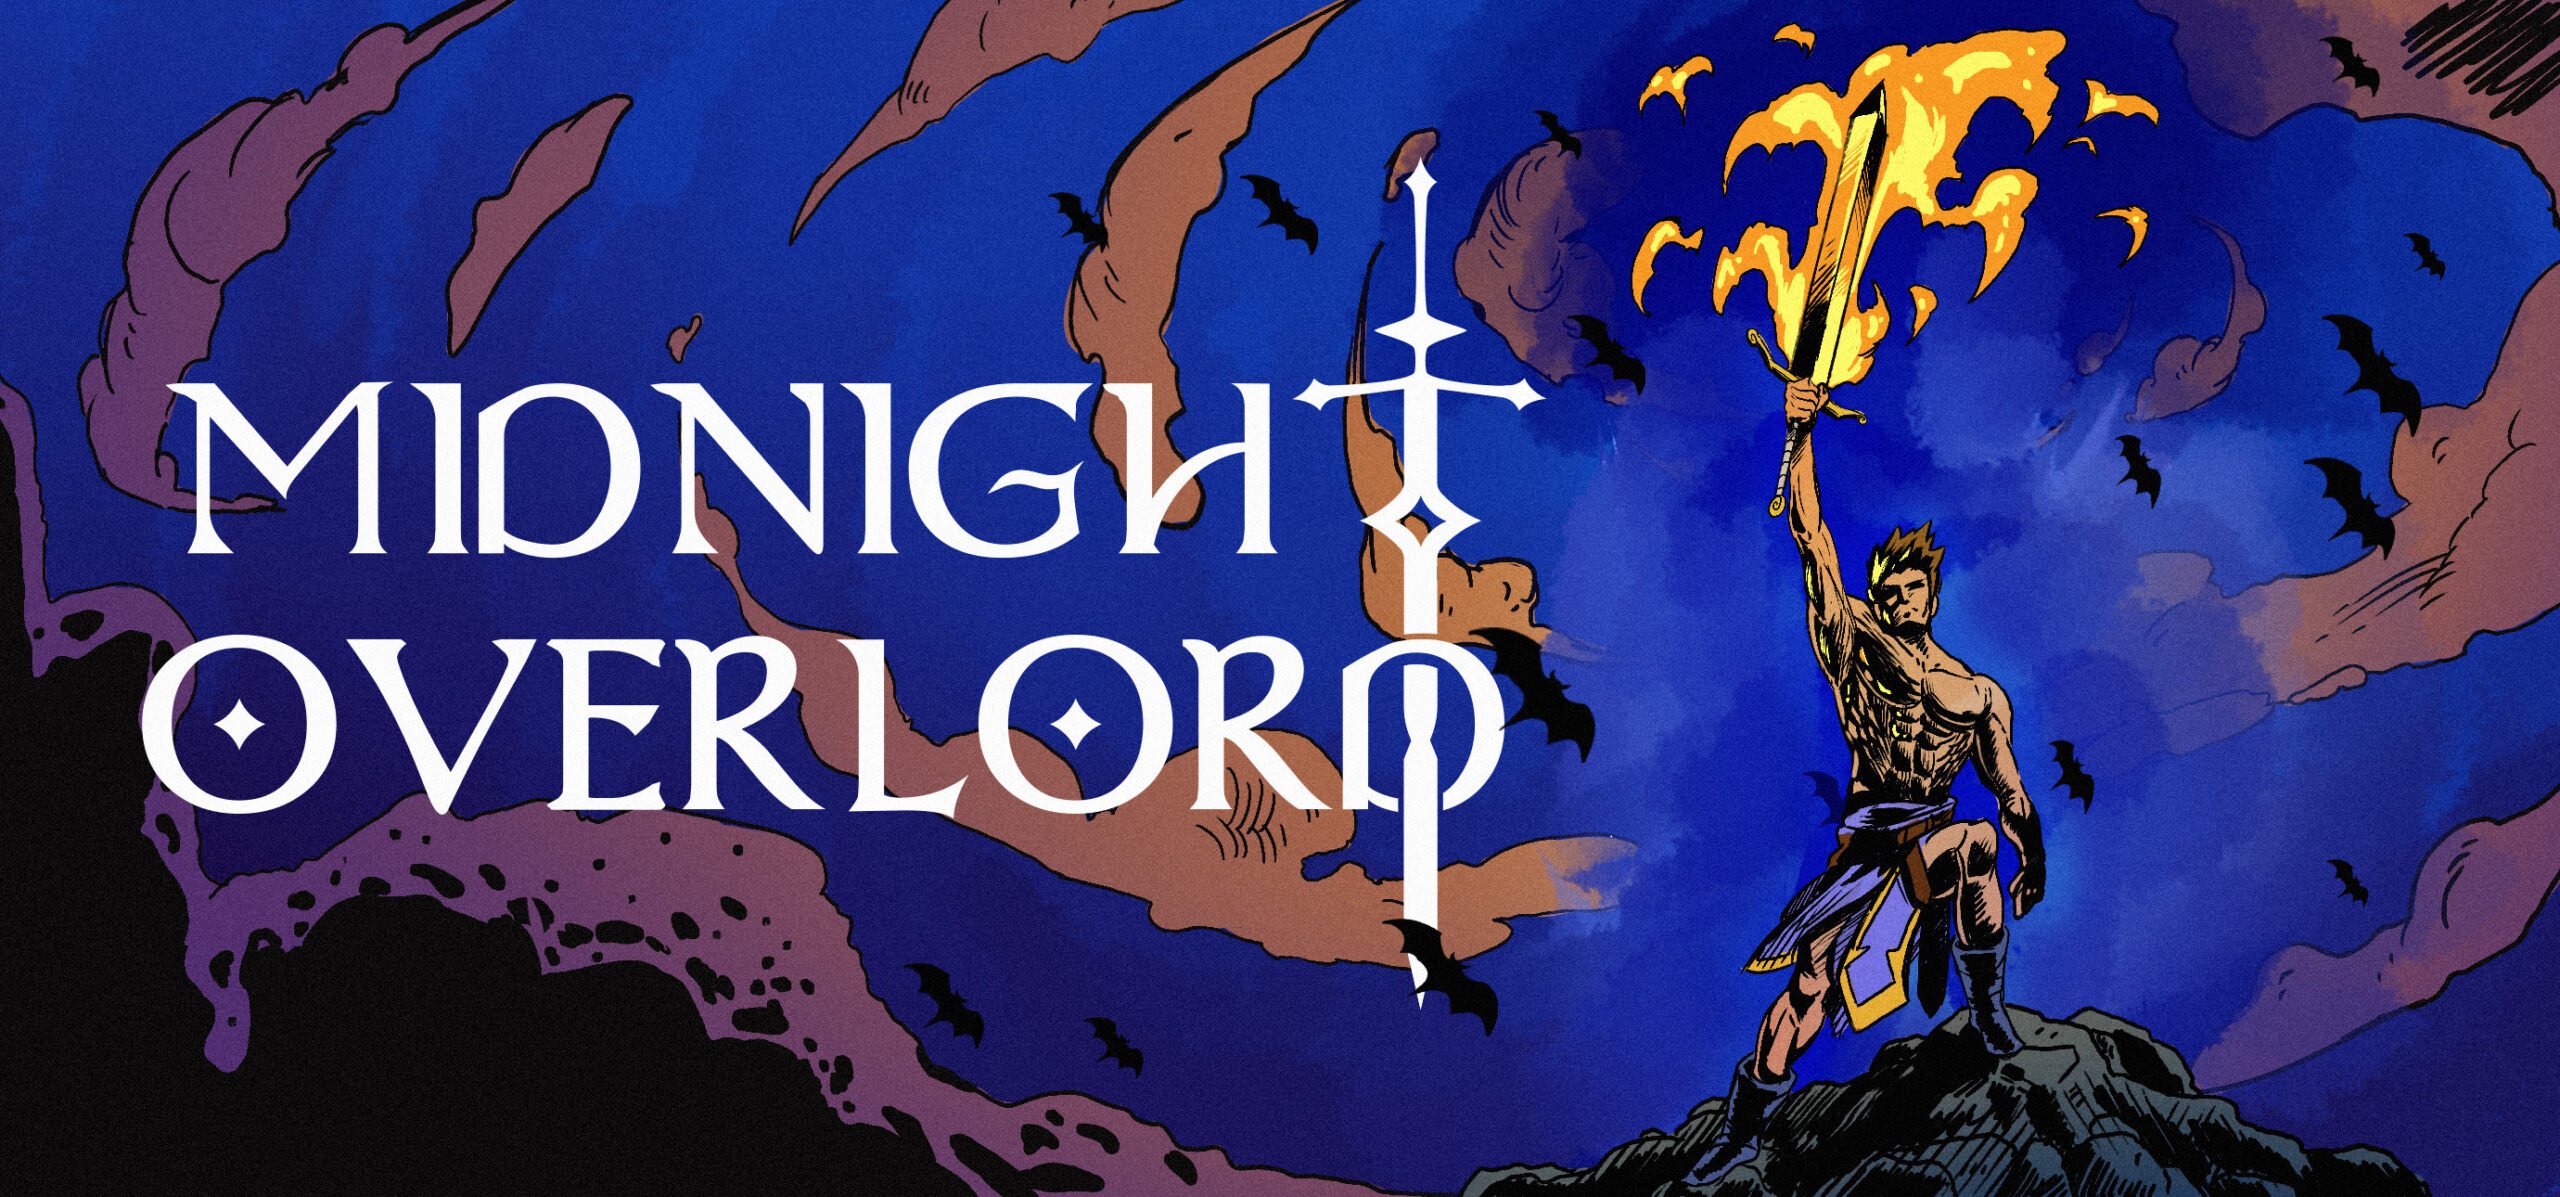 Midnight-overlord